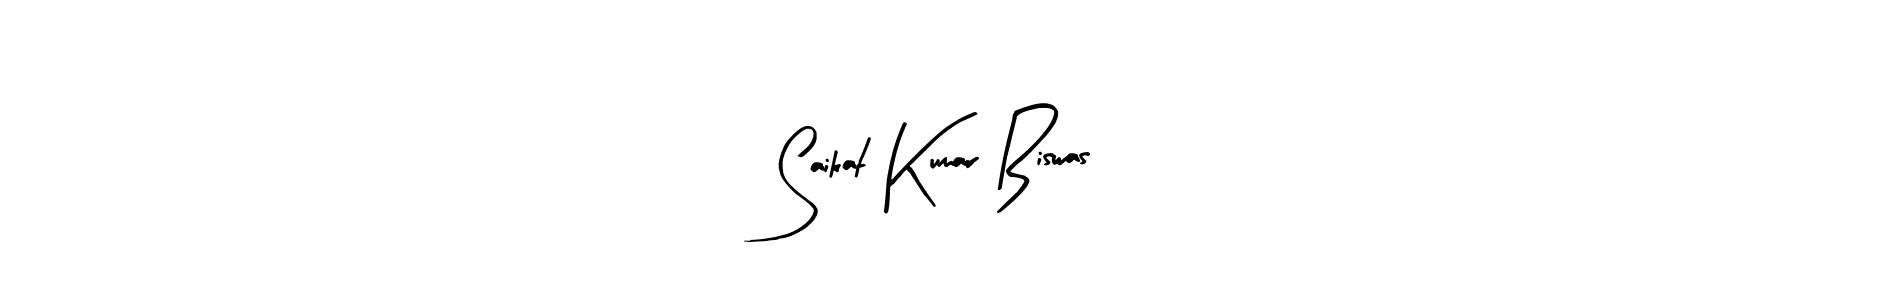 How to Draw Saikat Kumar Biswas signature style? Arty Signature is a latest design signature styles for name Saikat Kumar Biswas. Saikat Kumar Biswas signature style 8 images and pictures png